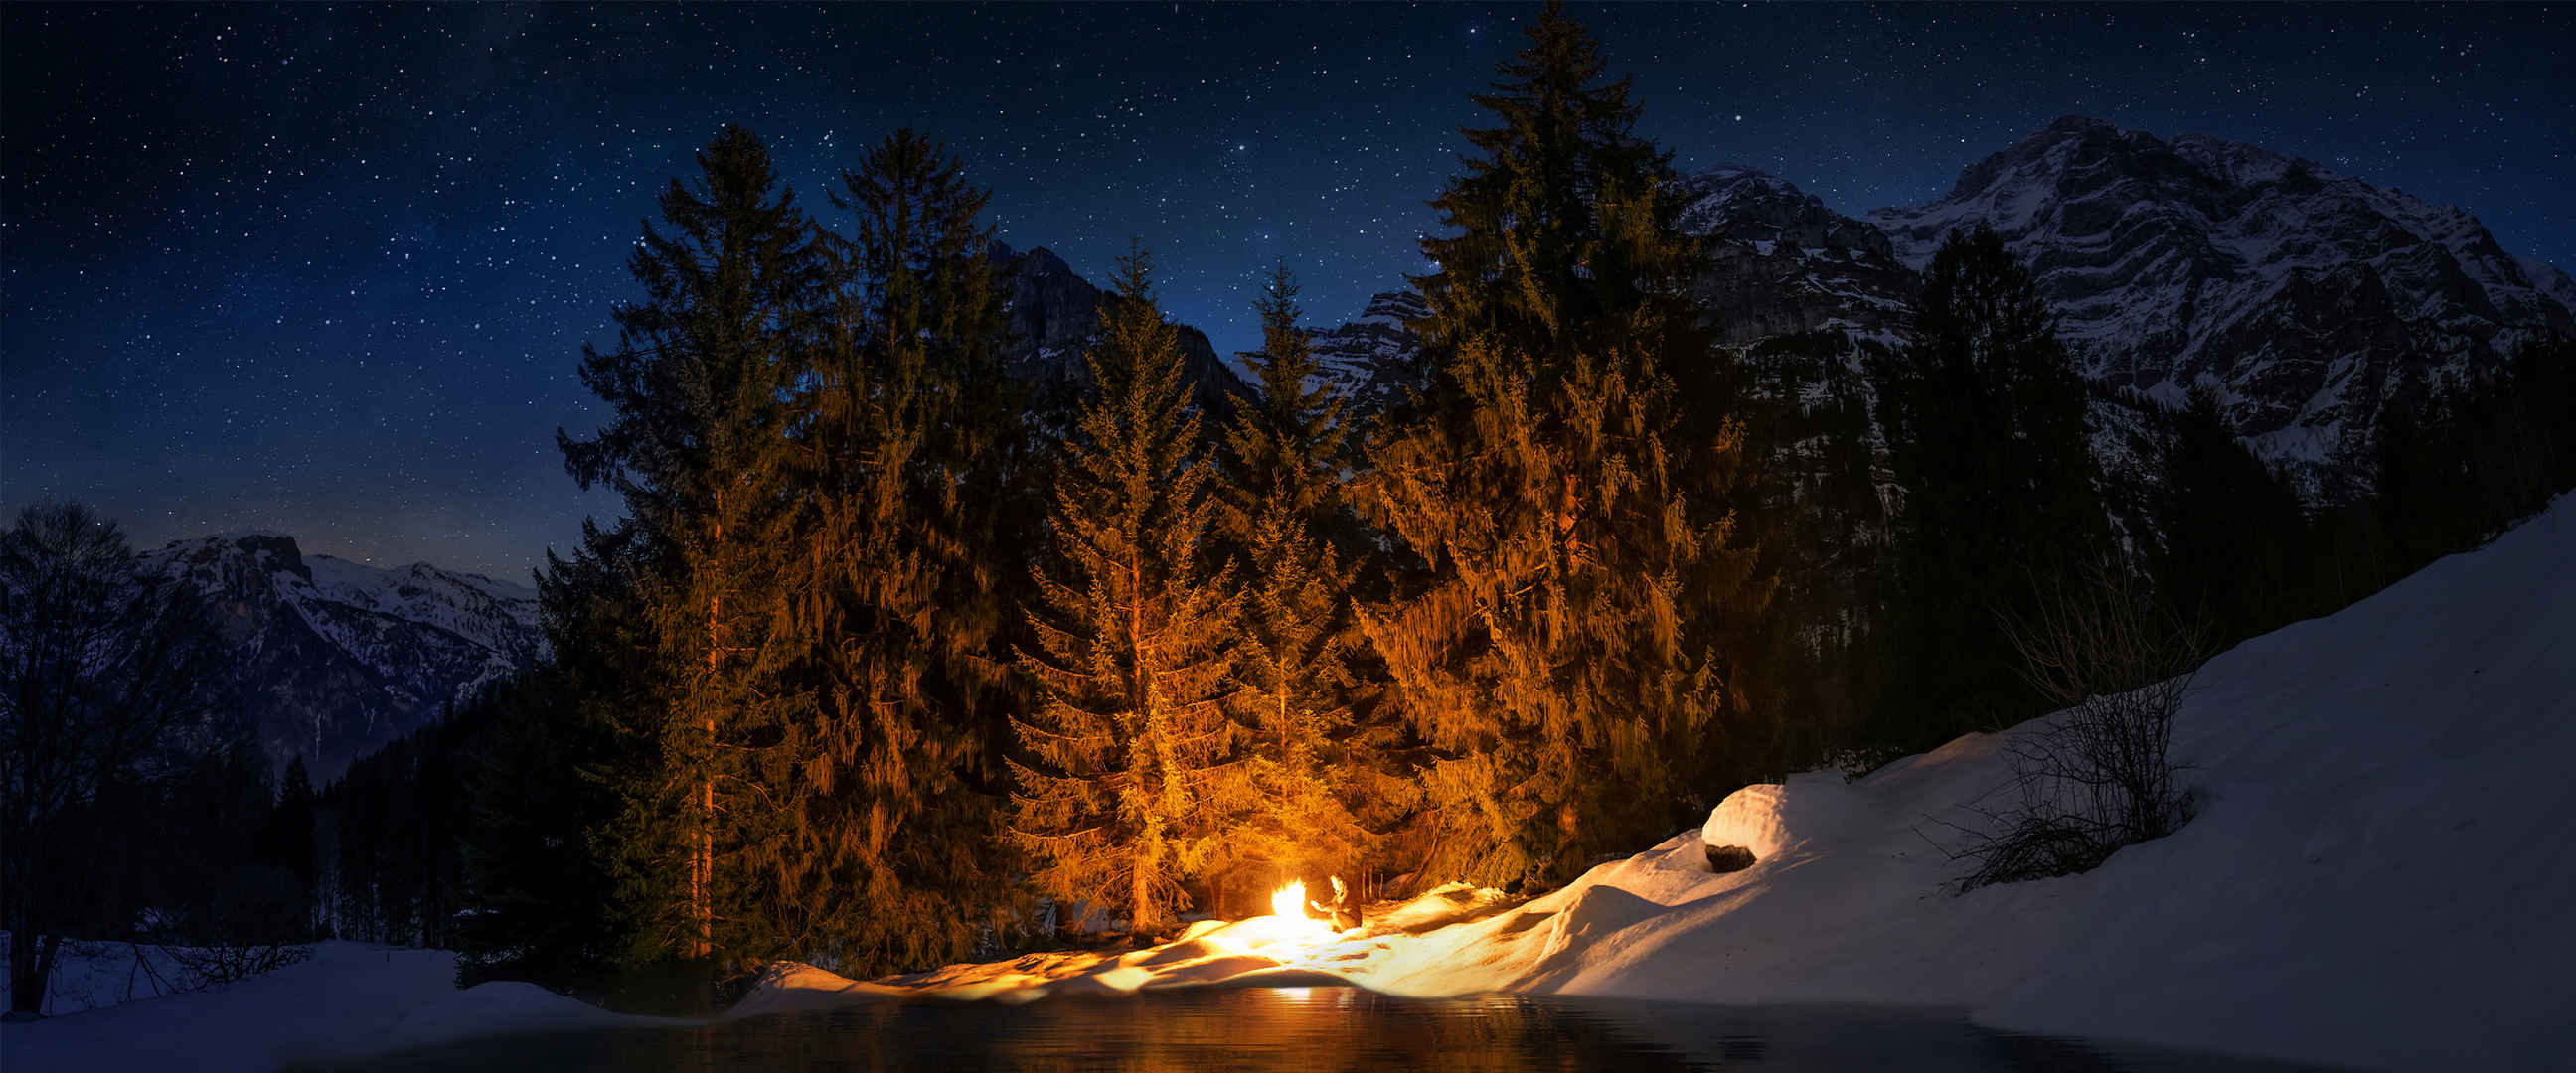 夜里森林里一个人生火取暖图片